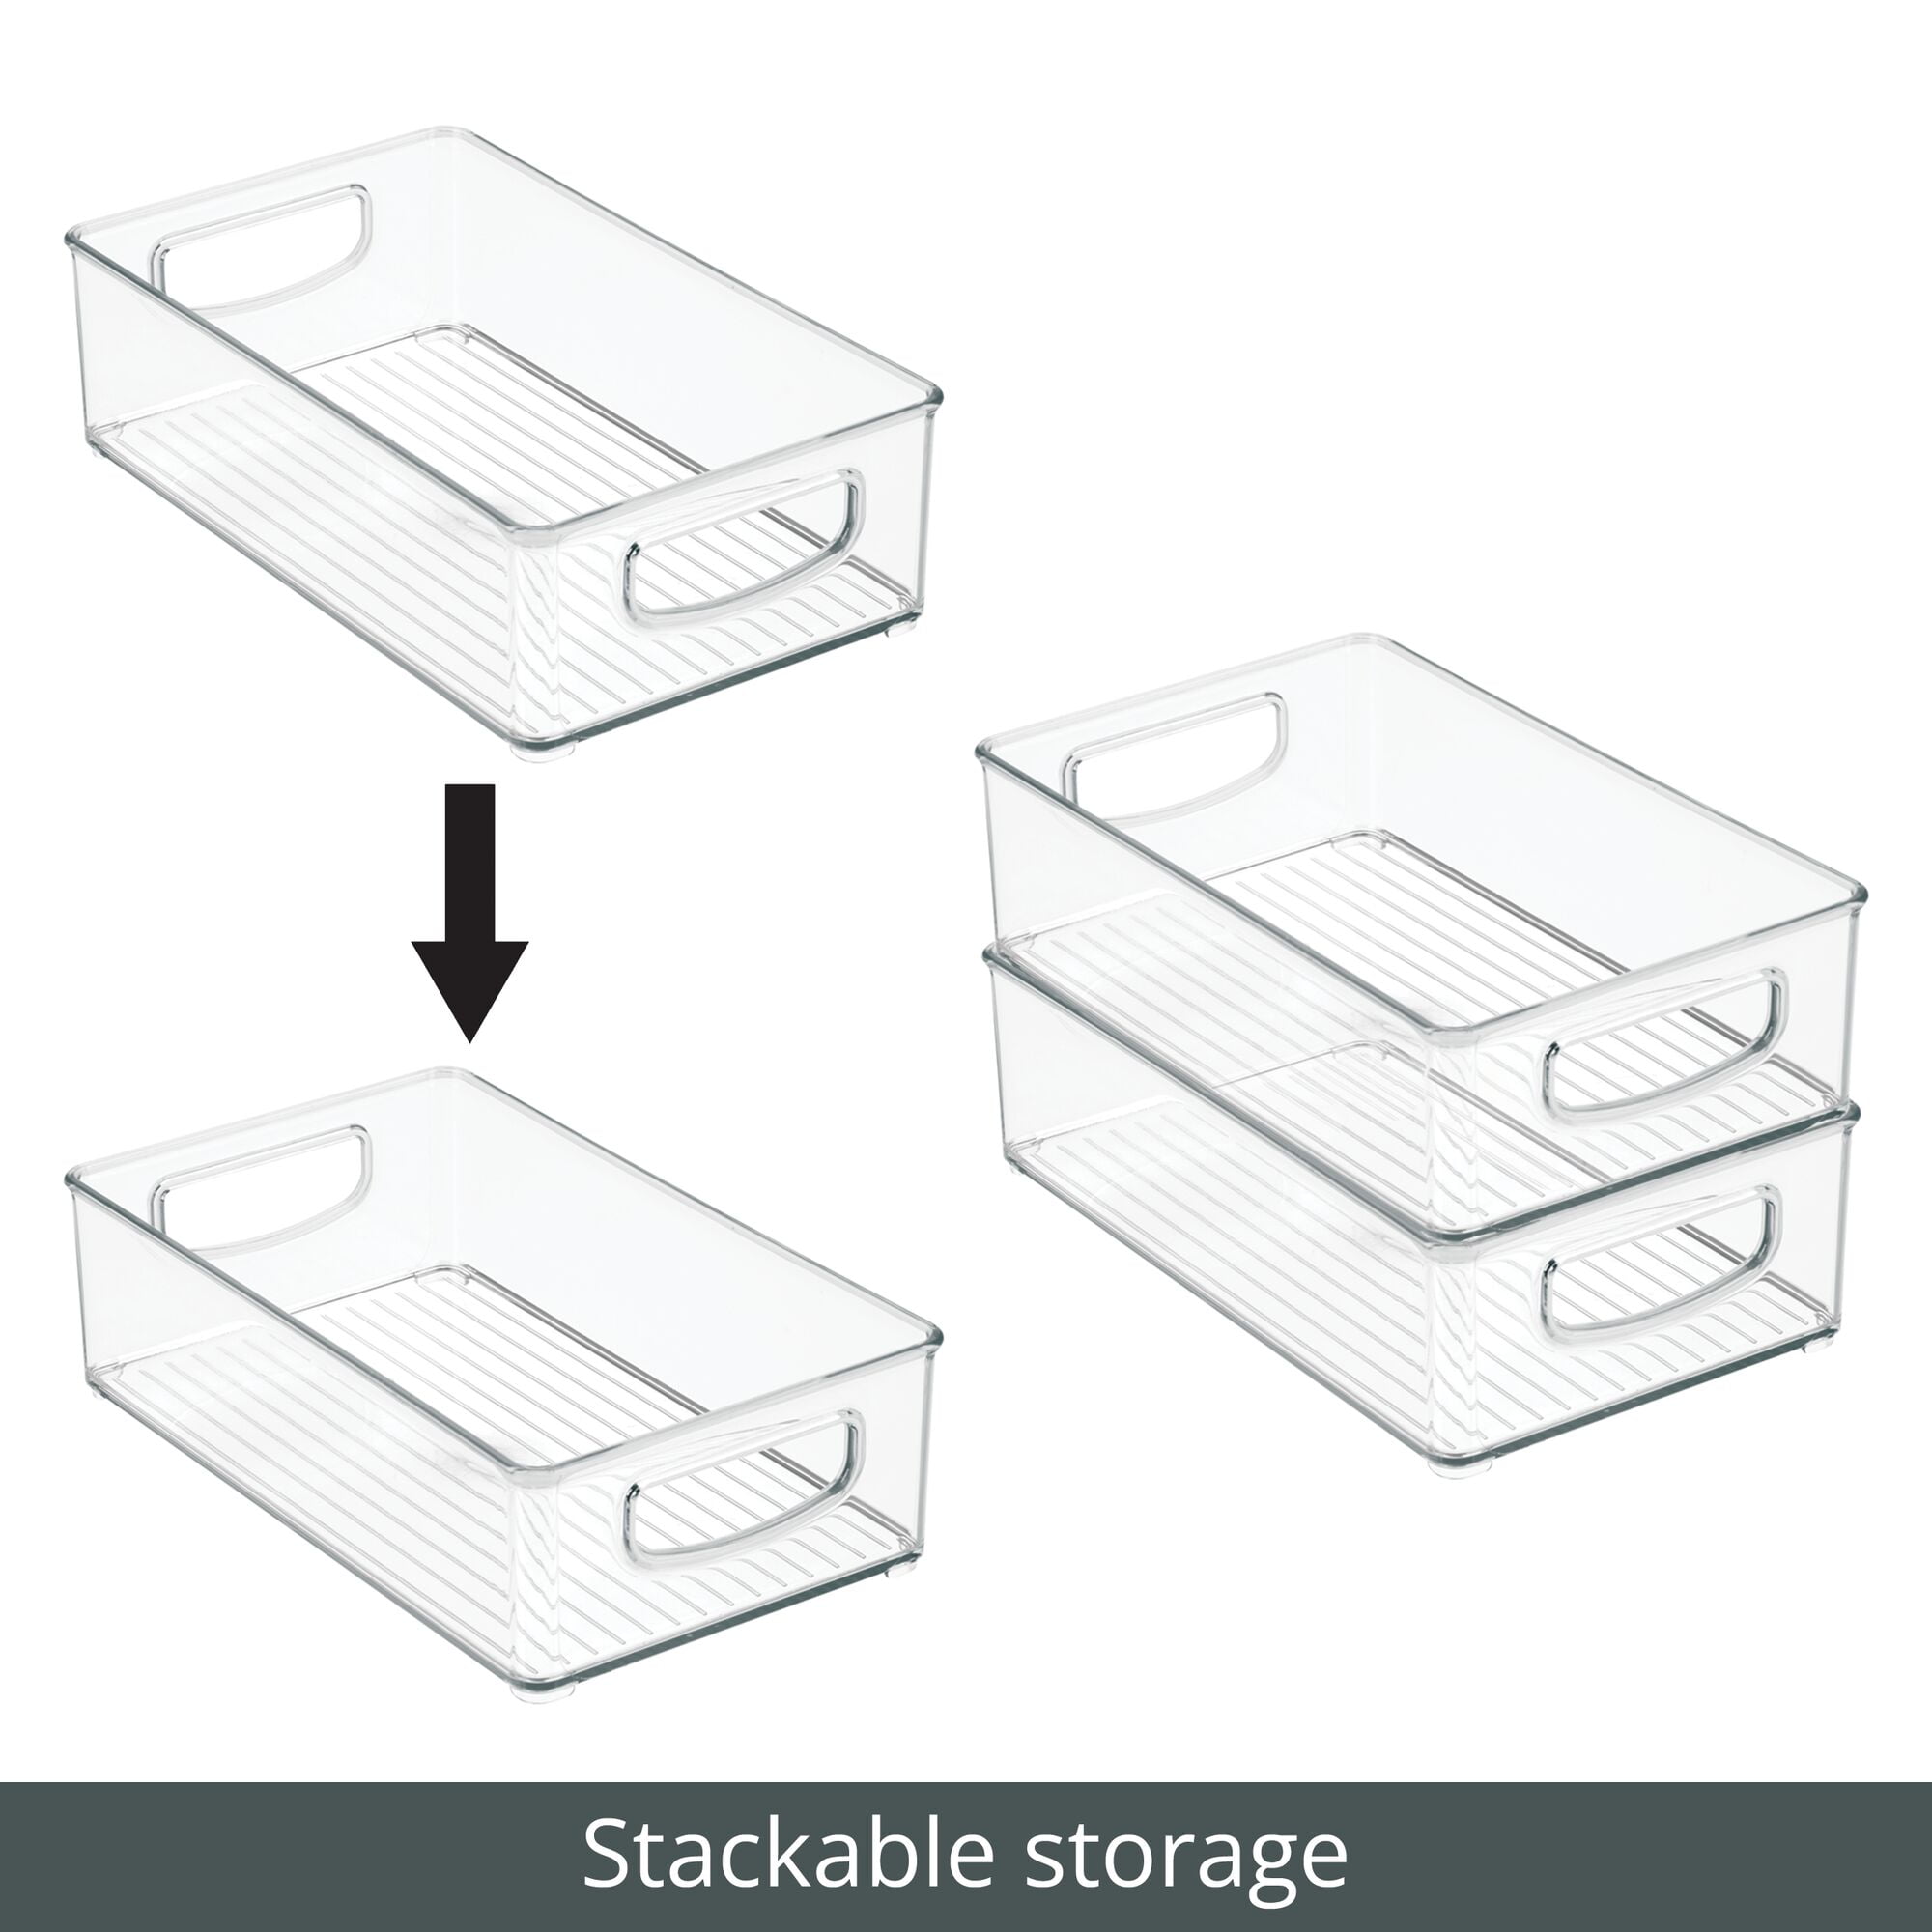 Confetti Small Plastic Storage Bin, 7 3/4 x 11 1/2 x 5 Inches, Mardel